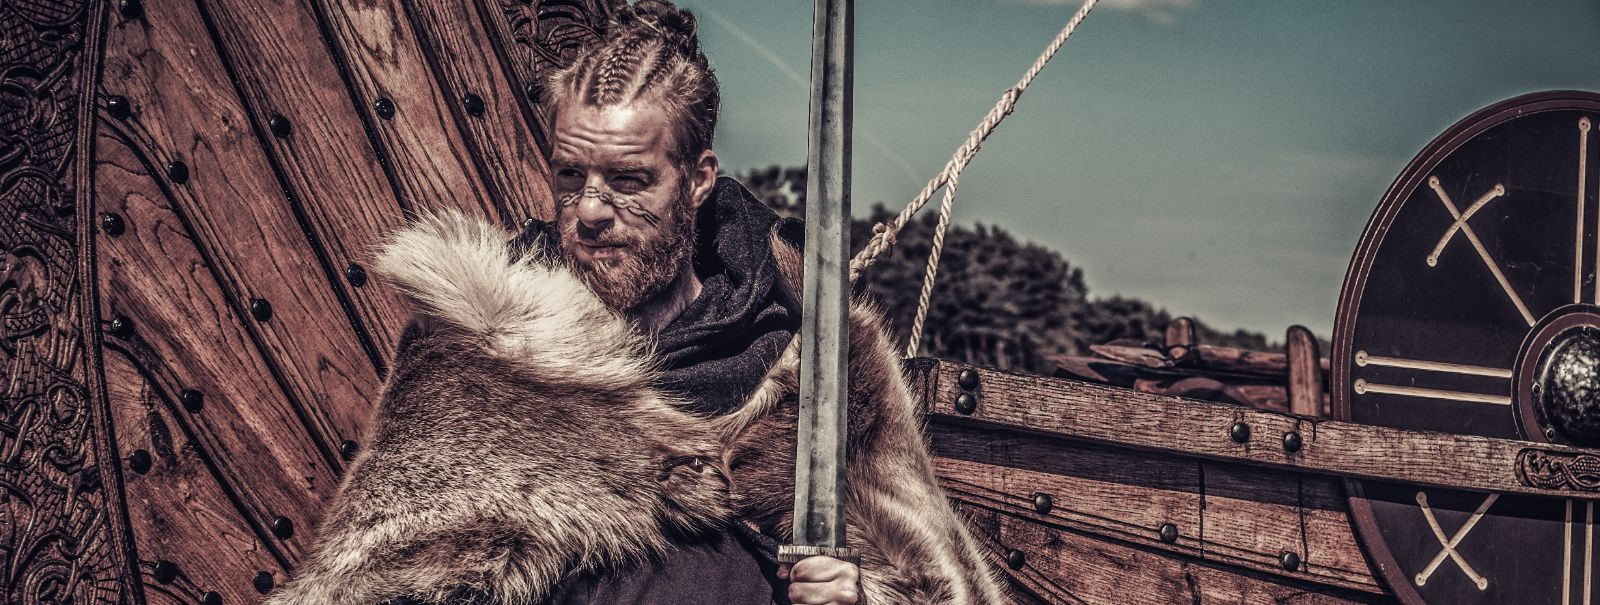 Viikingid olid 8. sajandi lõpust kuni 11. sajandi alguseni meresõitjad, kes pärinesid Skandinaaviast, praegustest Norrast, Rootsist ja Taanist. Nad olid tuntud 